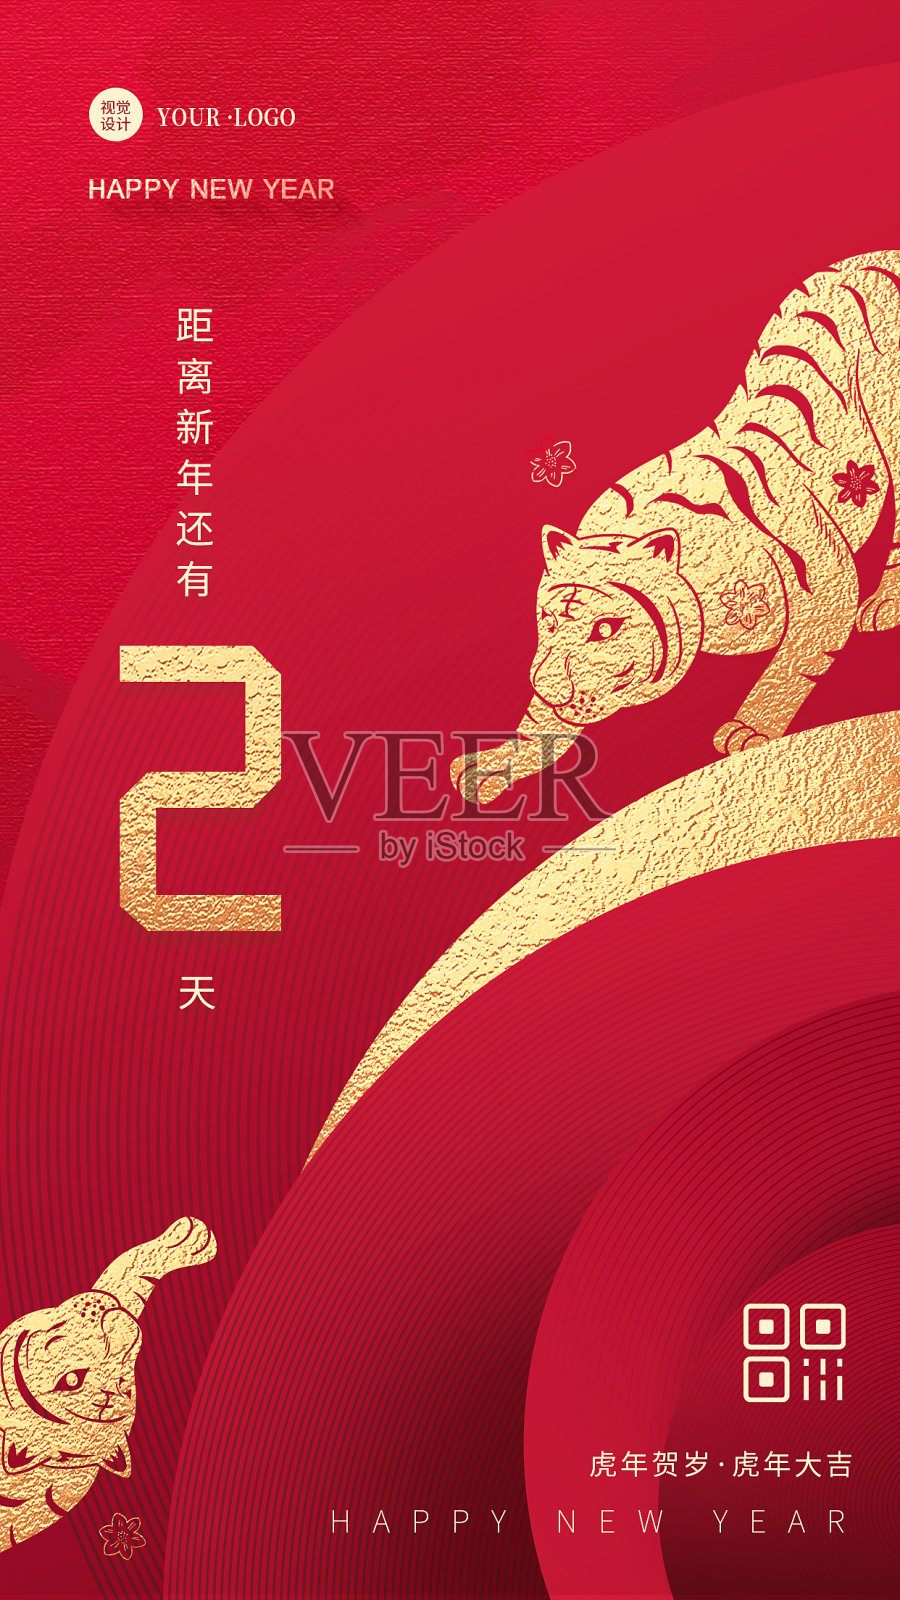 红色大气质感新年倒计时春节祝福宣传手机海报设计模板素材